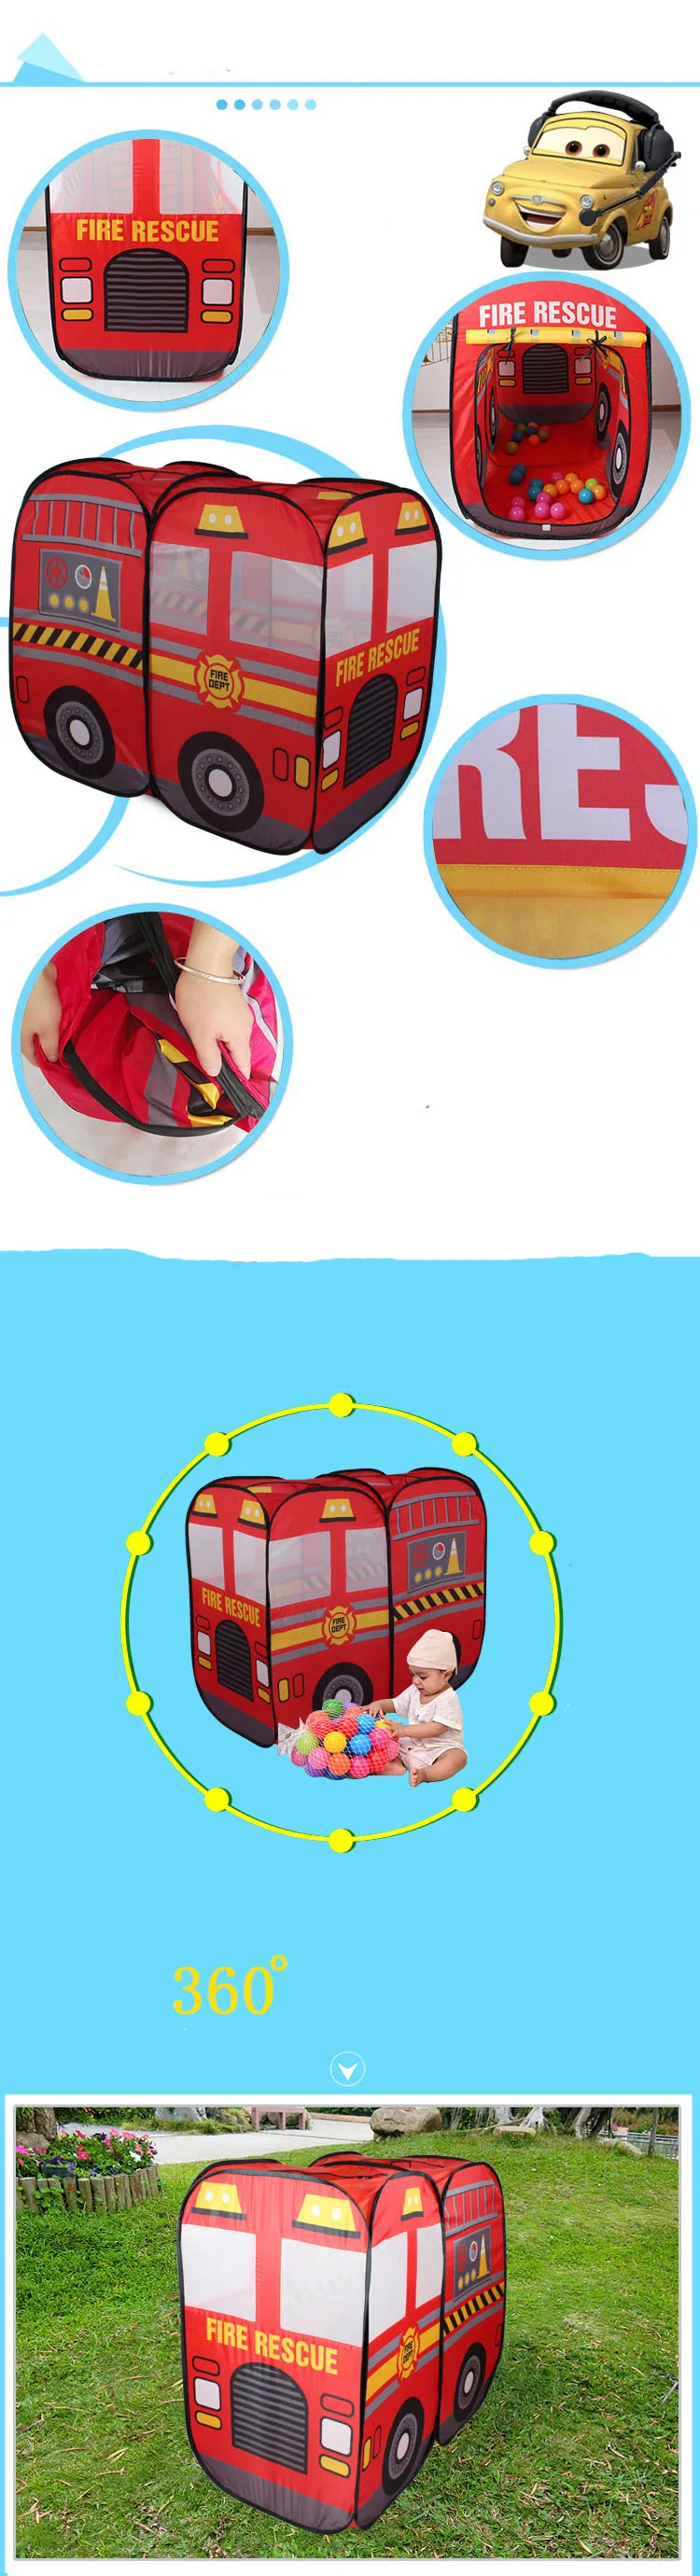 Детская палатка детская пожарная машина игровой дом большой комаров детские игрушки Морской шар ткань для бассейна складной> 3 лет